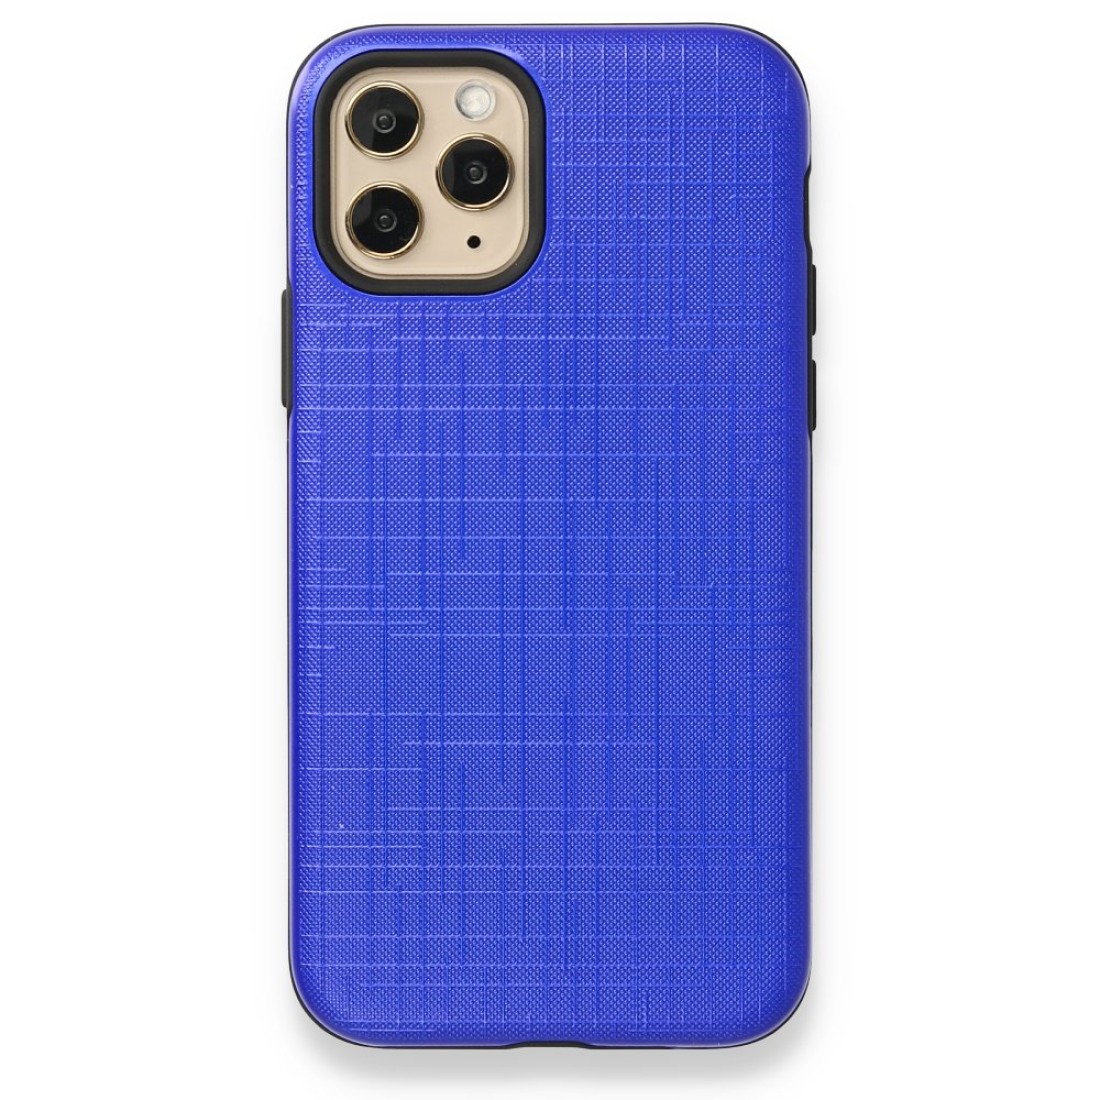 Apple iPhone 11 Pro Max Kılıf YouYou Silikon Kapak - Mavi